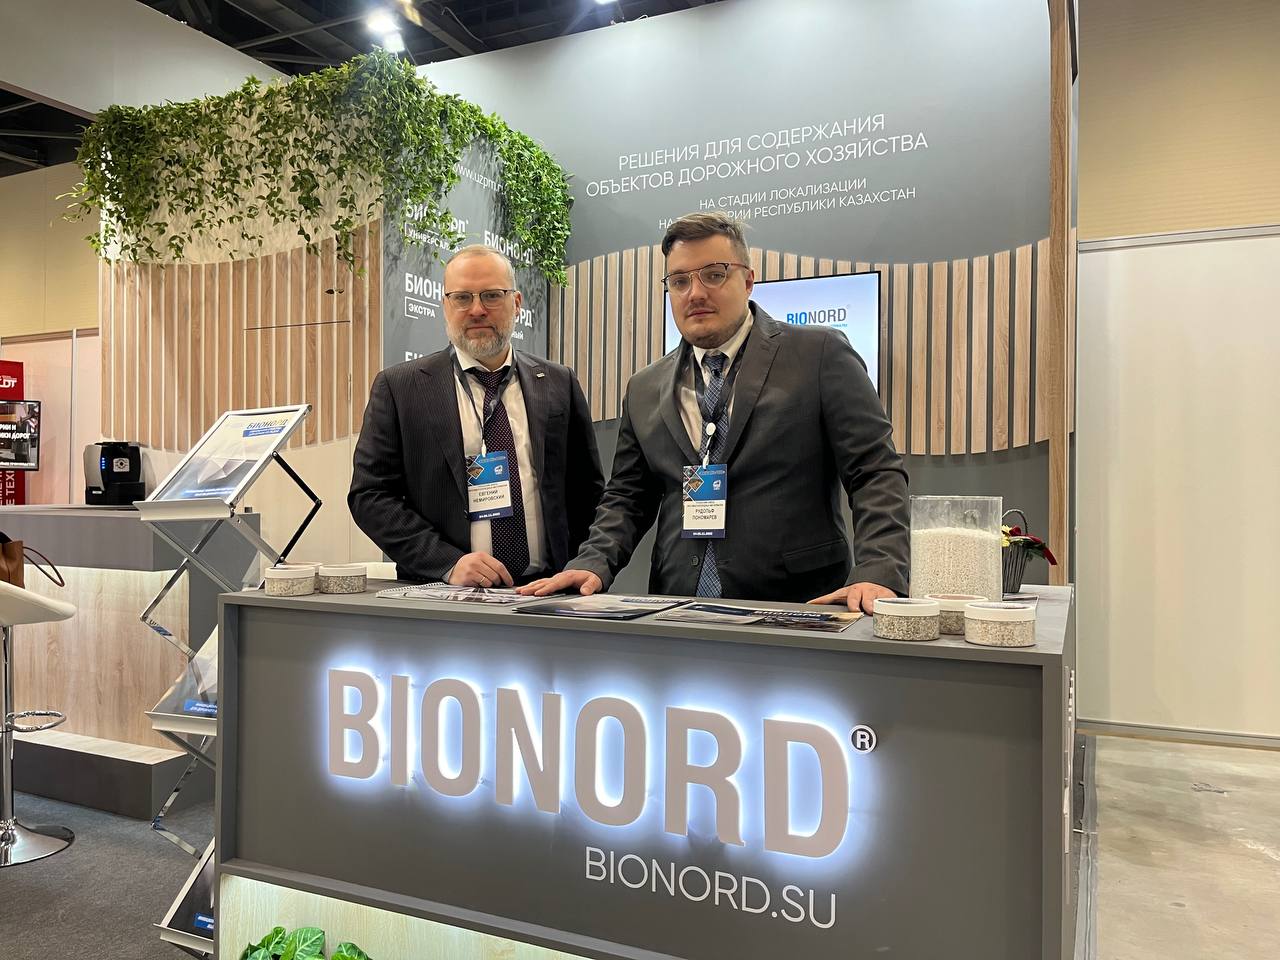 «Бионорд» на международной выставке в Казахстане